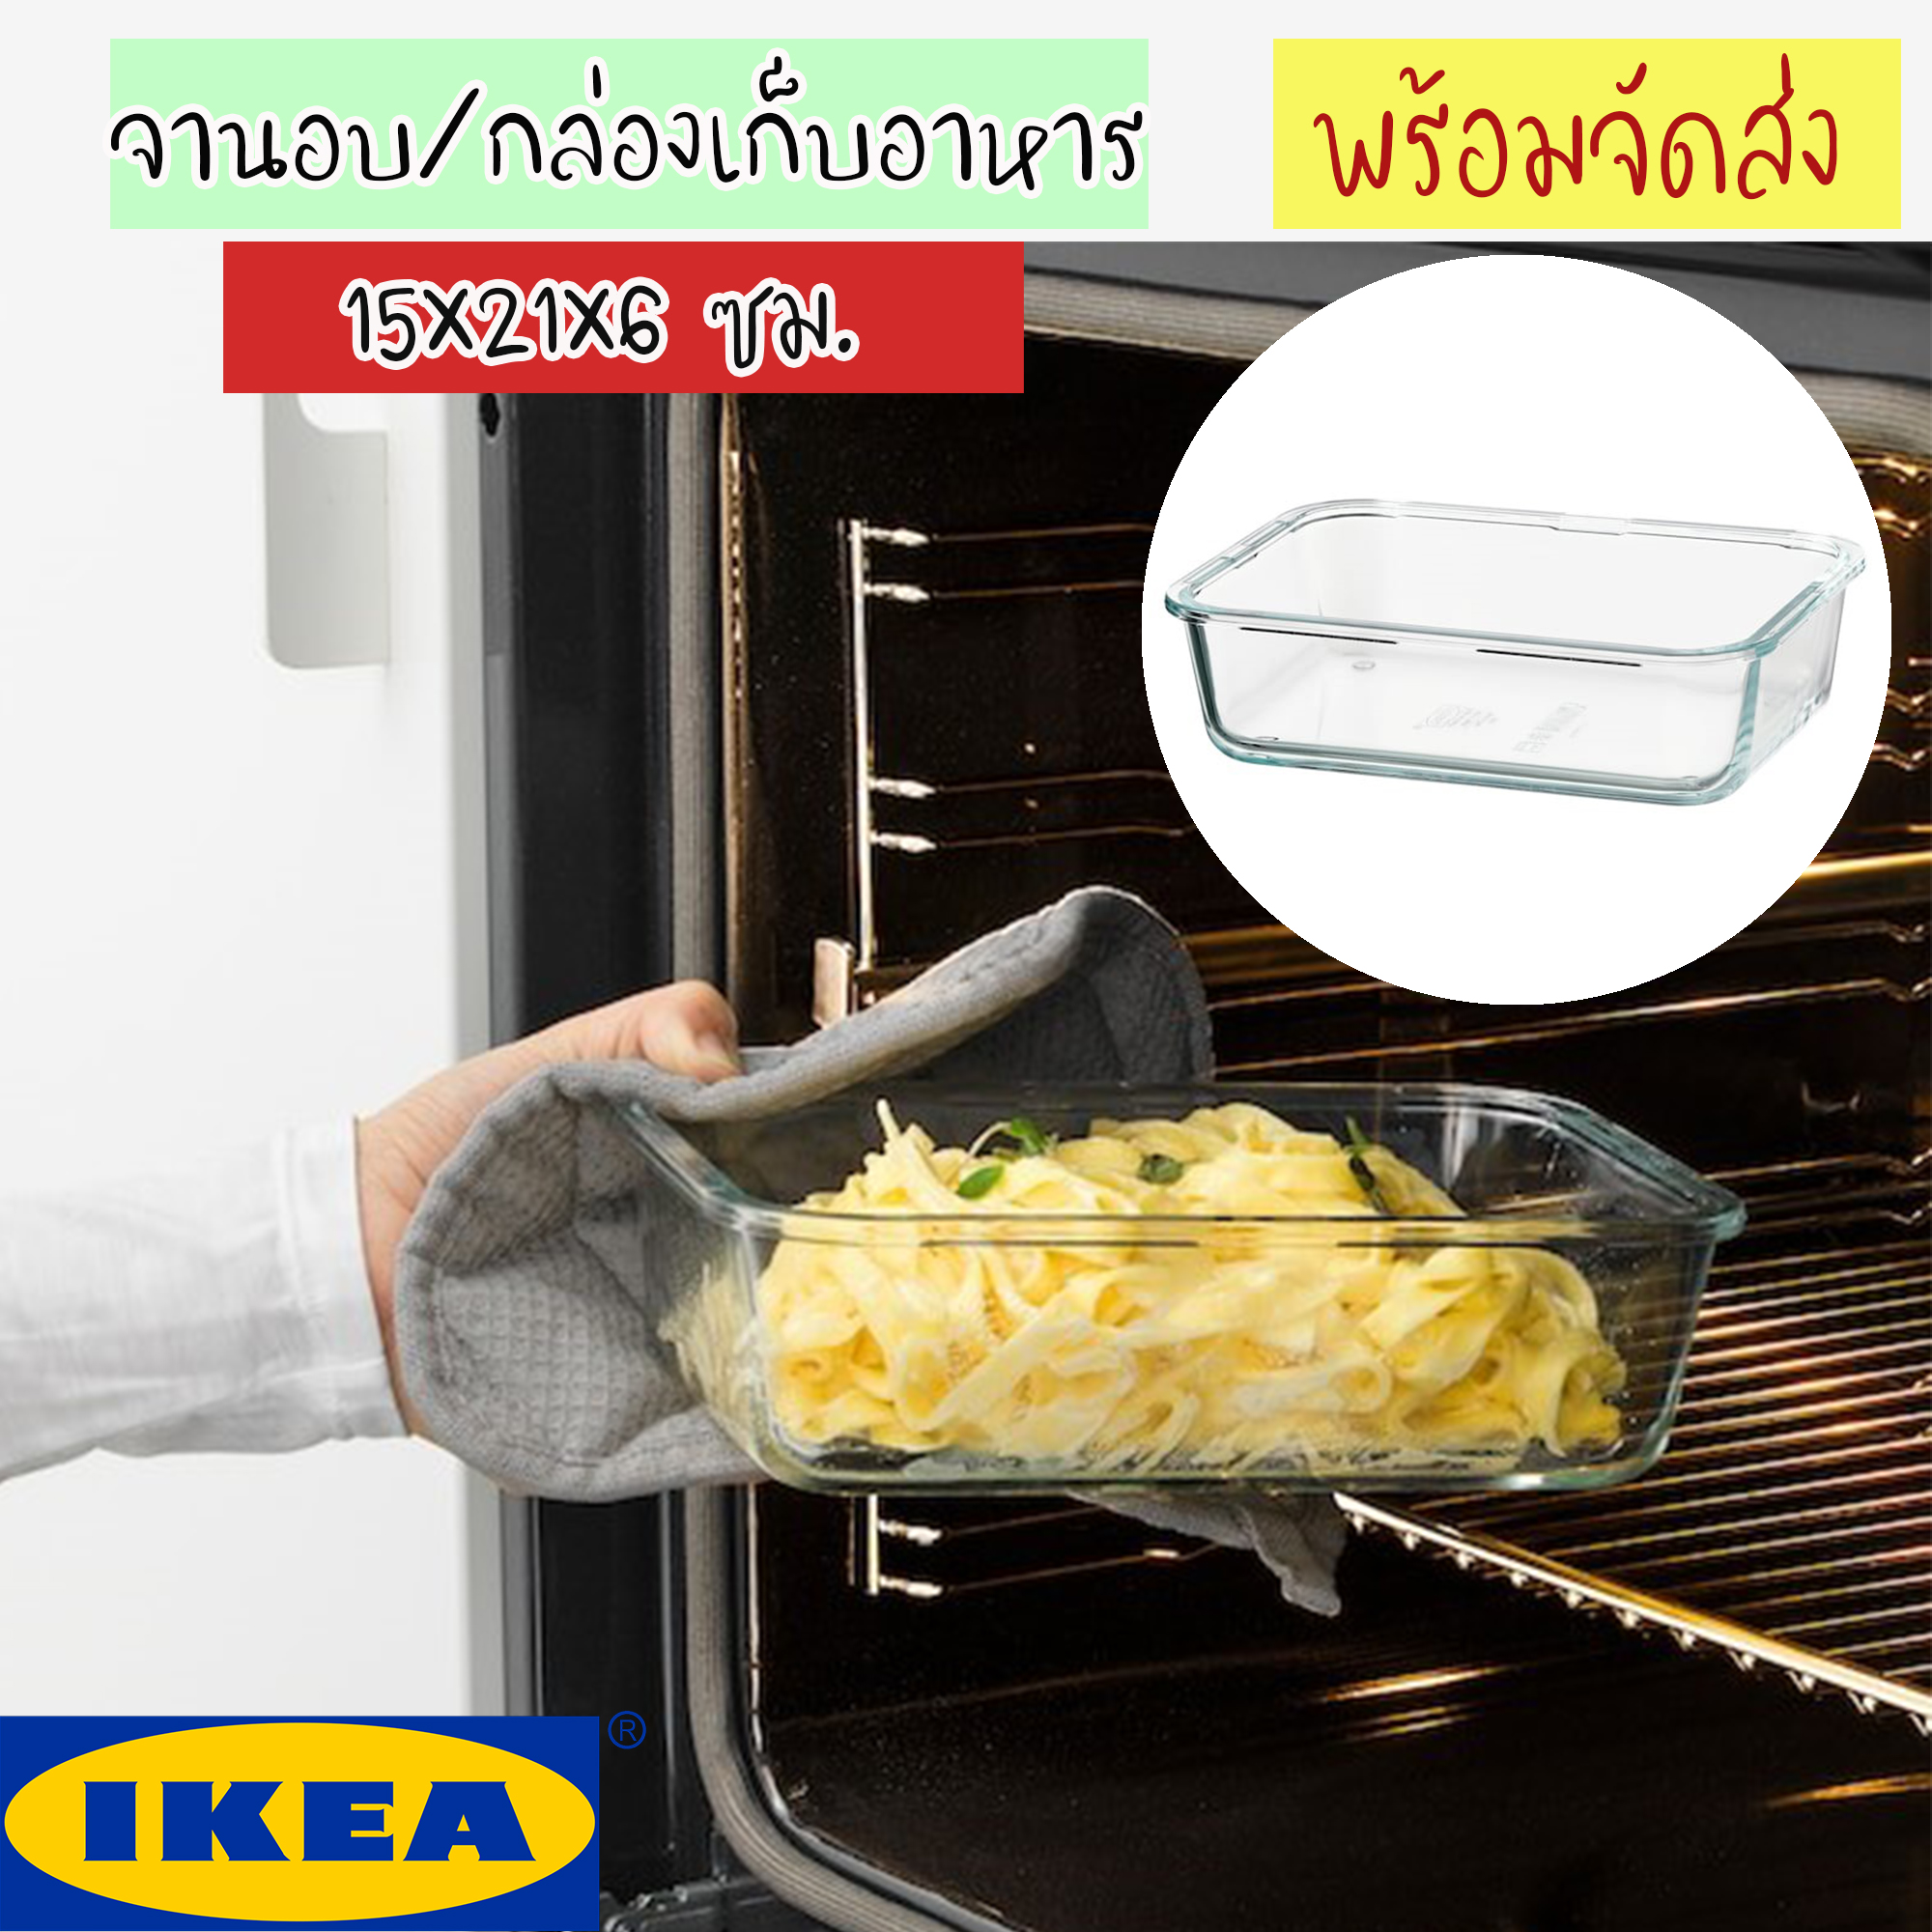 IKEA 365+ อิเกีย 365+ ถาดอบอาหาร จานอบ กล่องเก็บอาหาร, สี่เหลี่ยมผืนผ้า/แก้ว 1.0 ลิตร